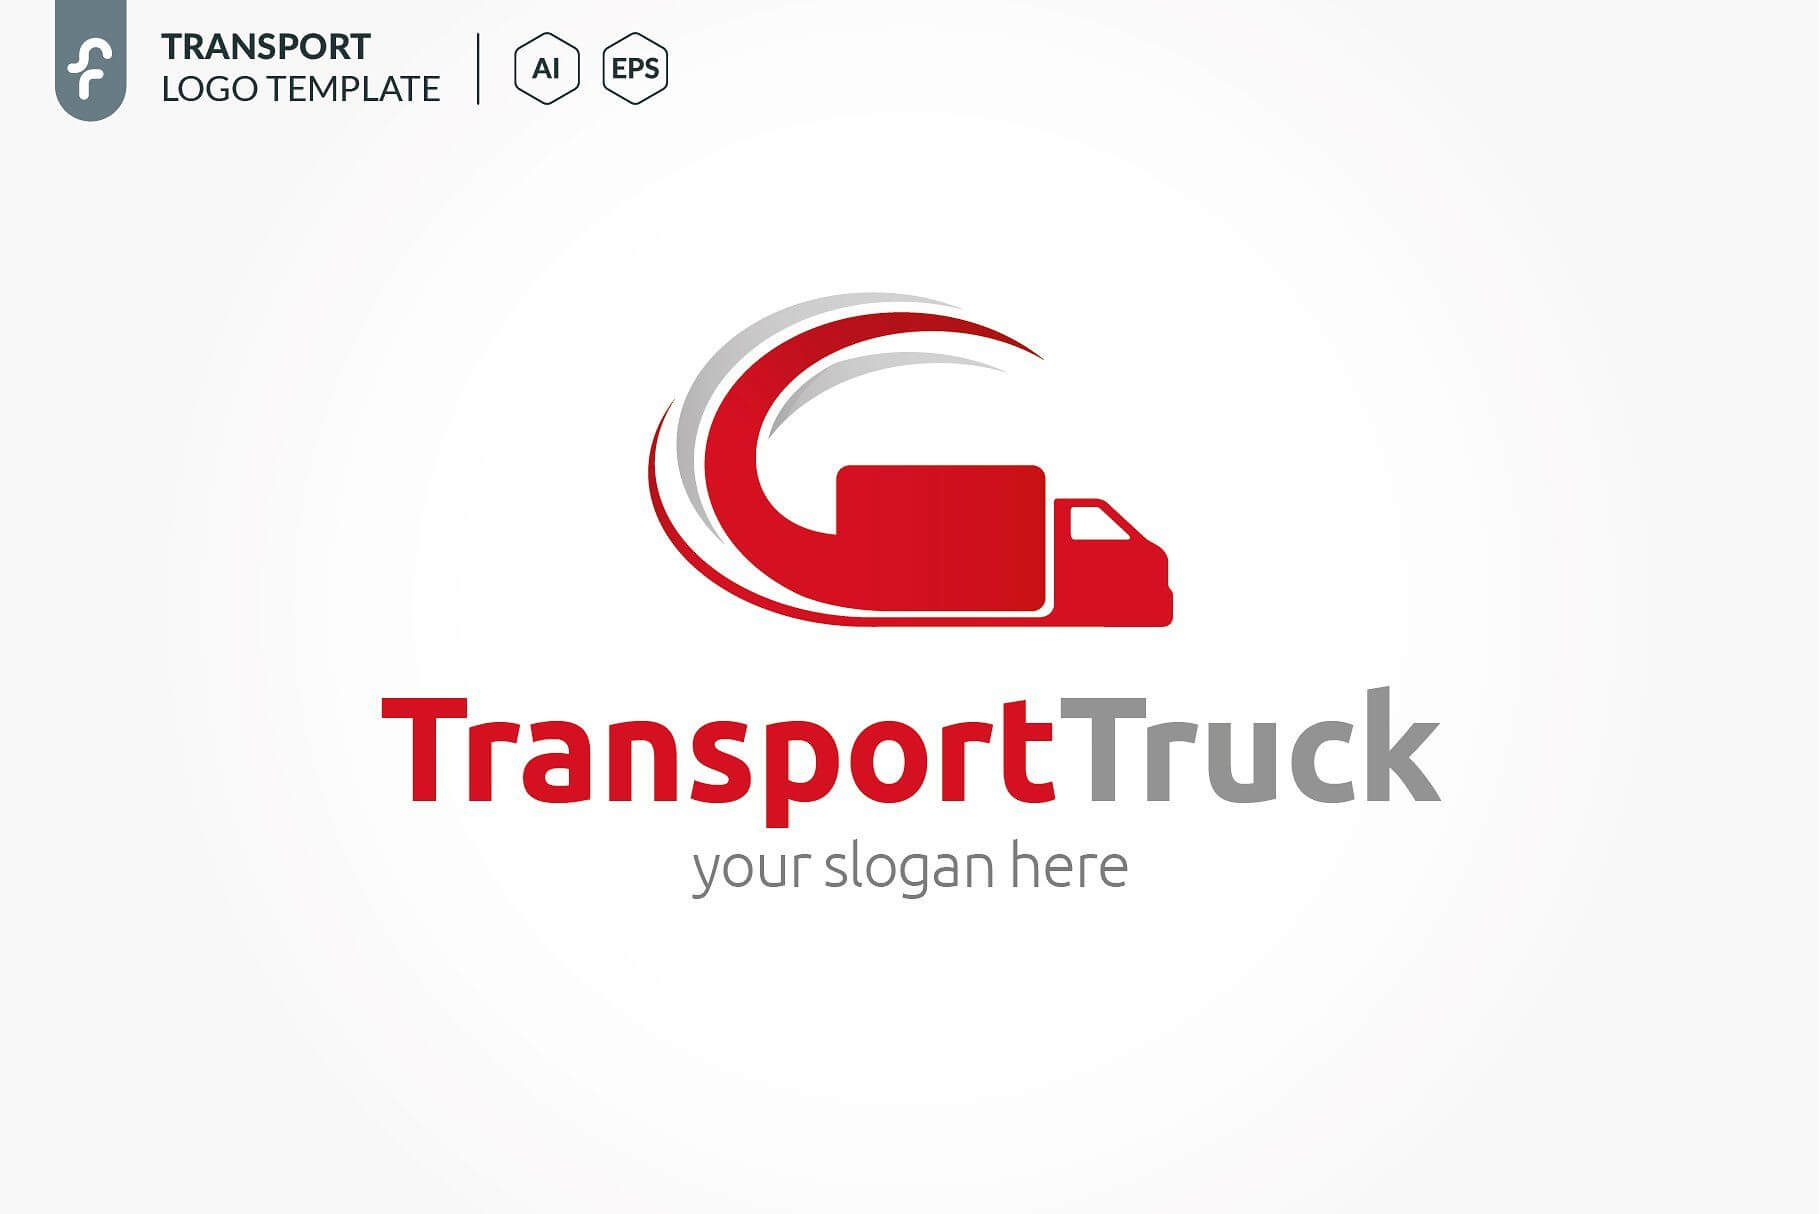 Transport Truck Logo #truck#transport#templates#logo in Transport